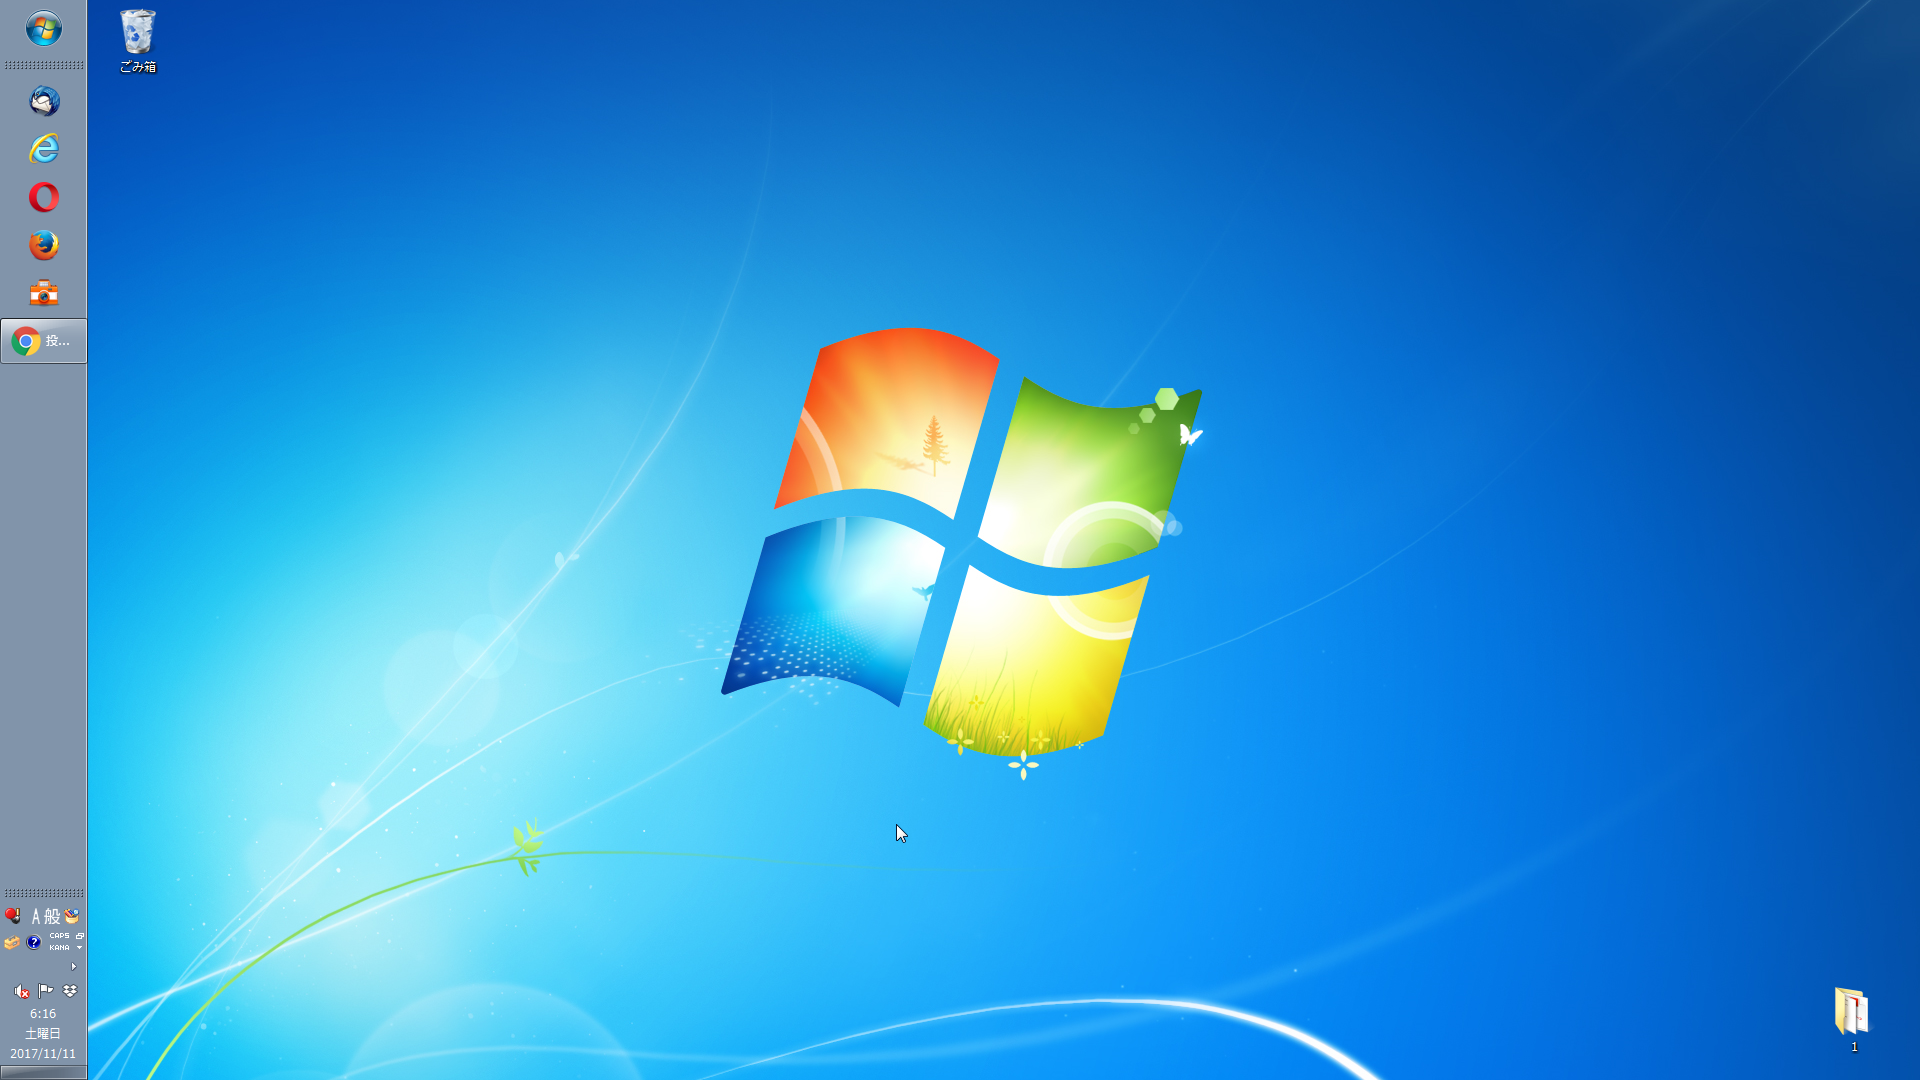 Windows10 アイコンが消えた場合などにはエクスプローラーを再起動してみる パソコンの問題を改善